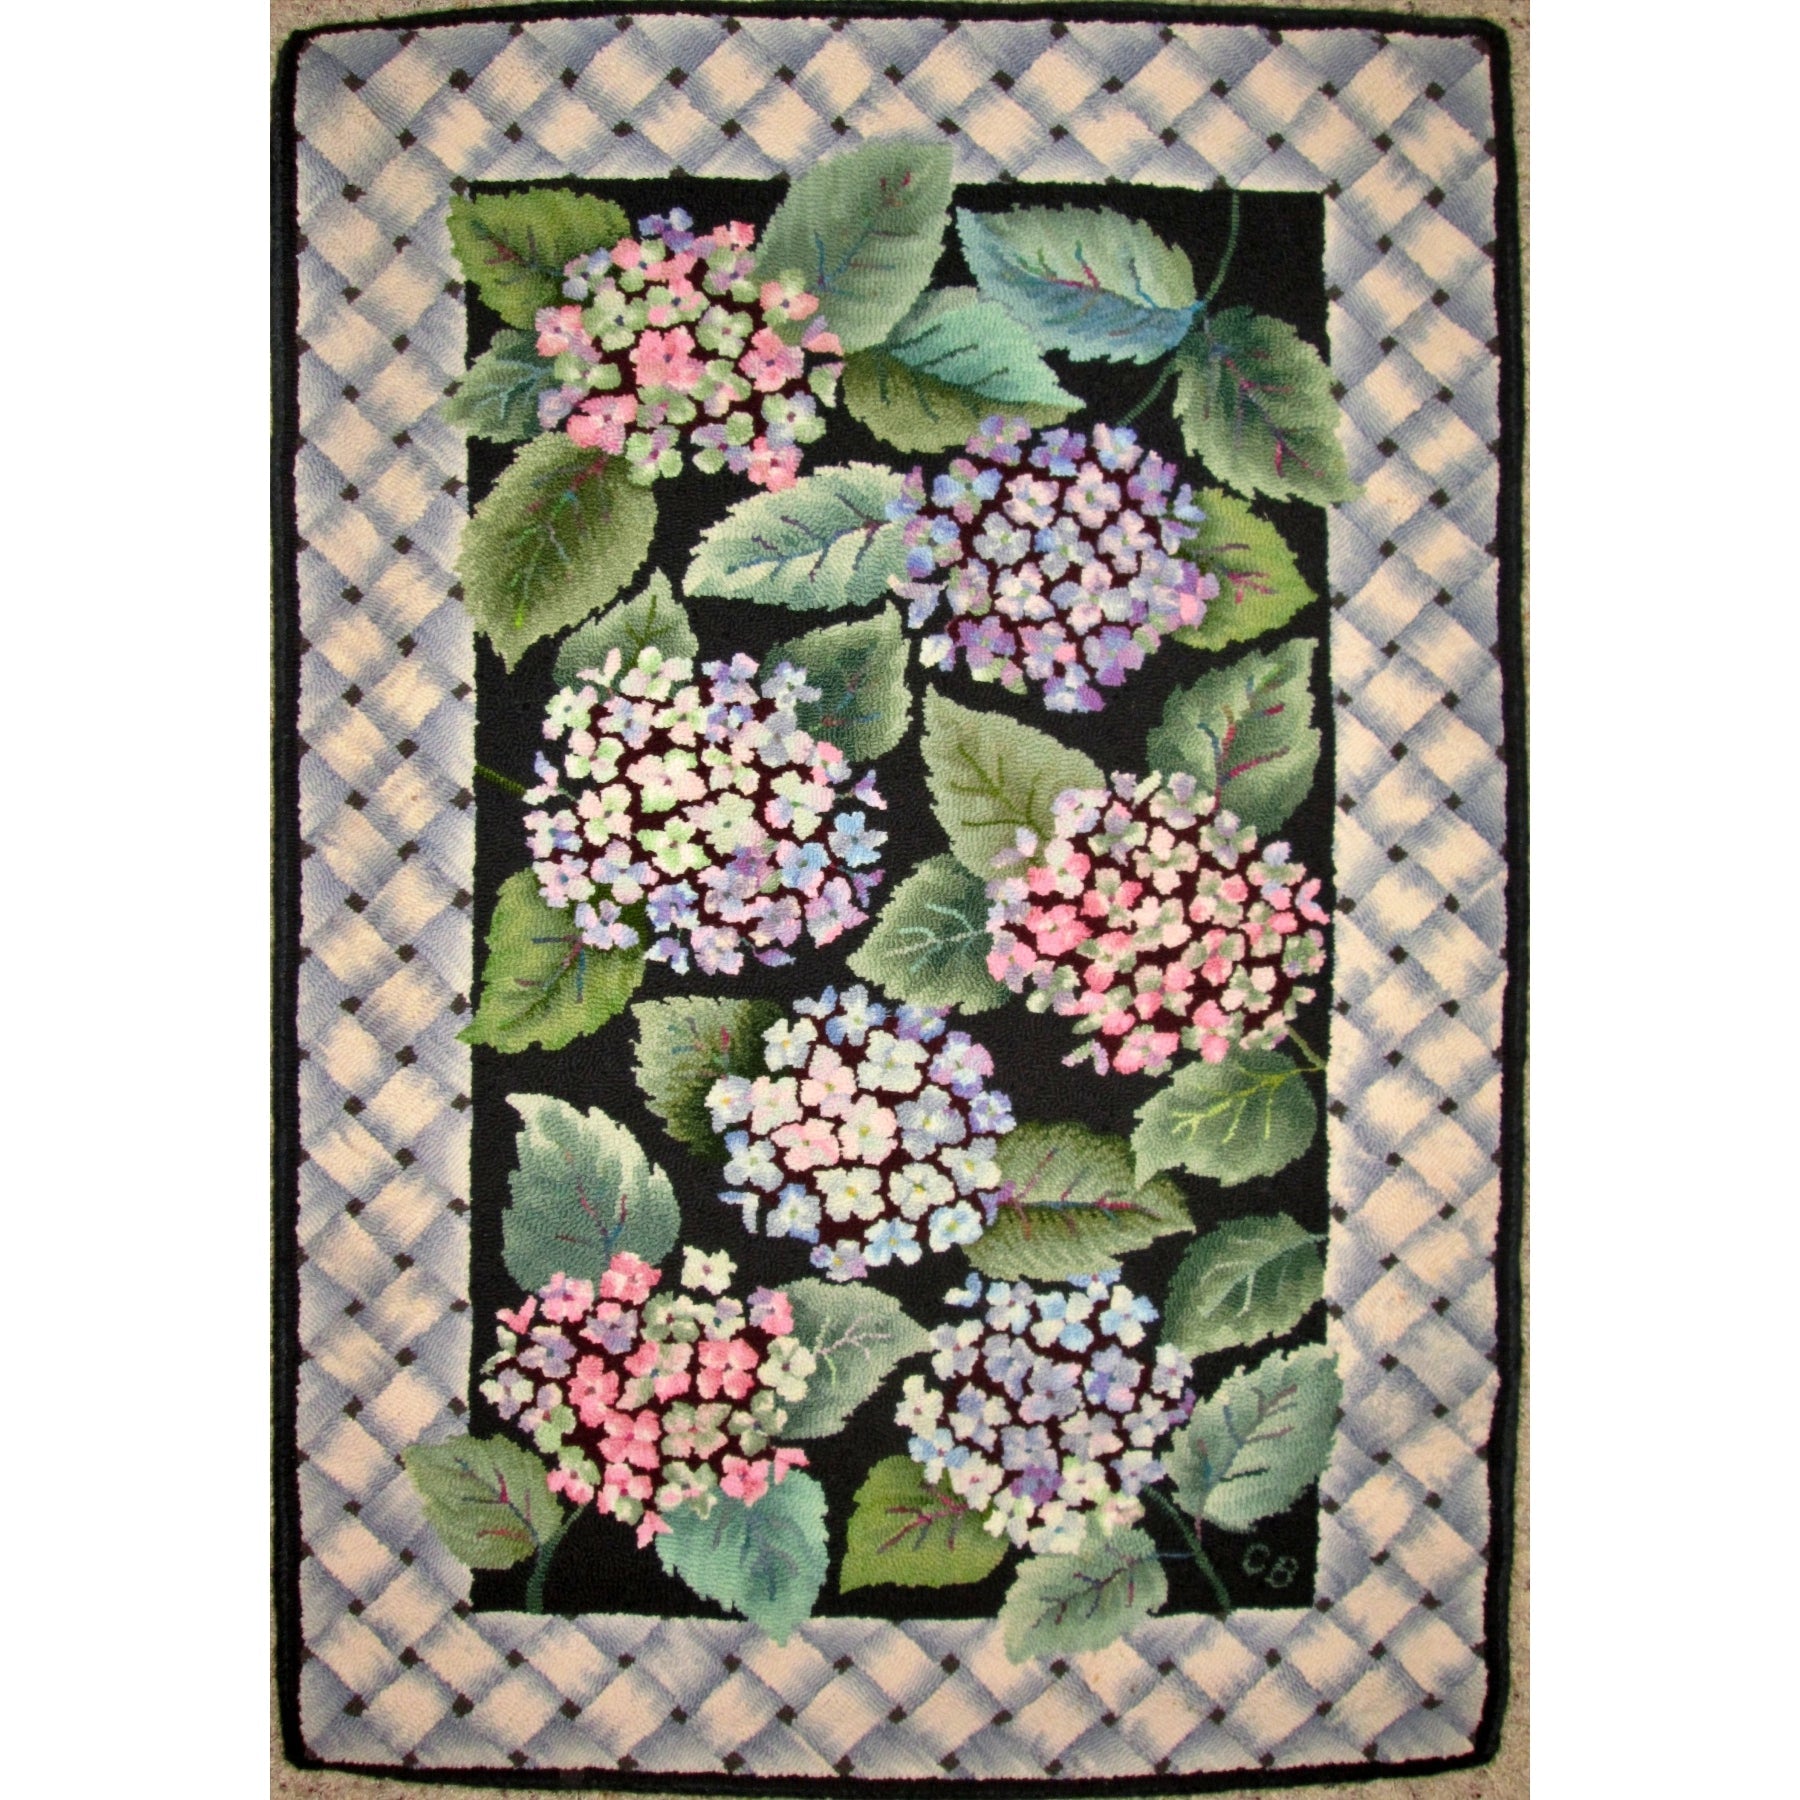 Hydrangeas, rug hooked by Connie Bradley